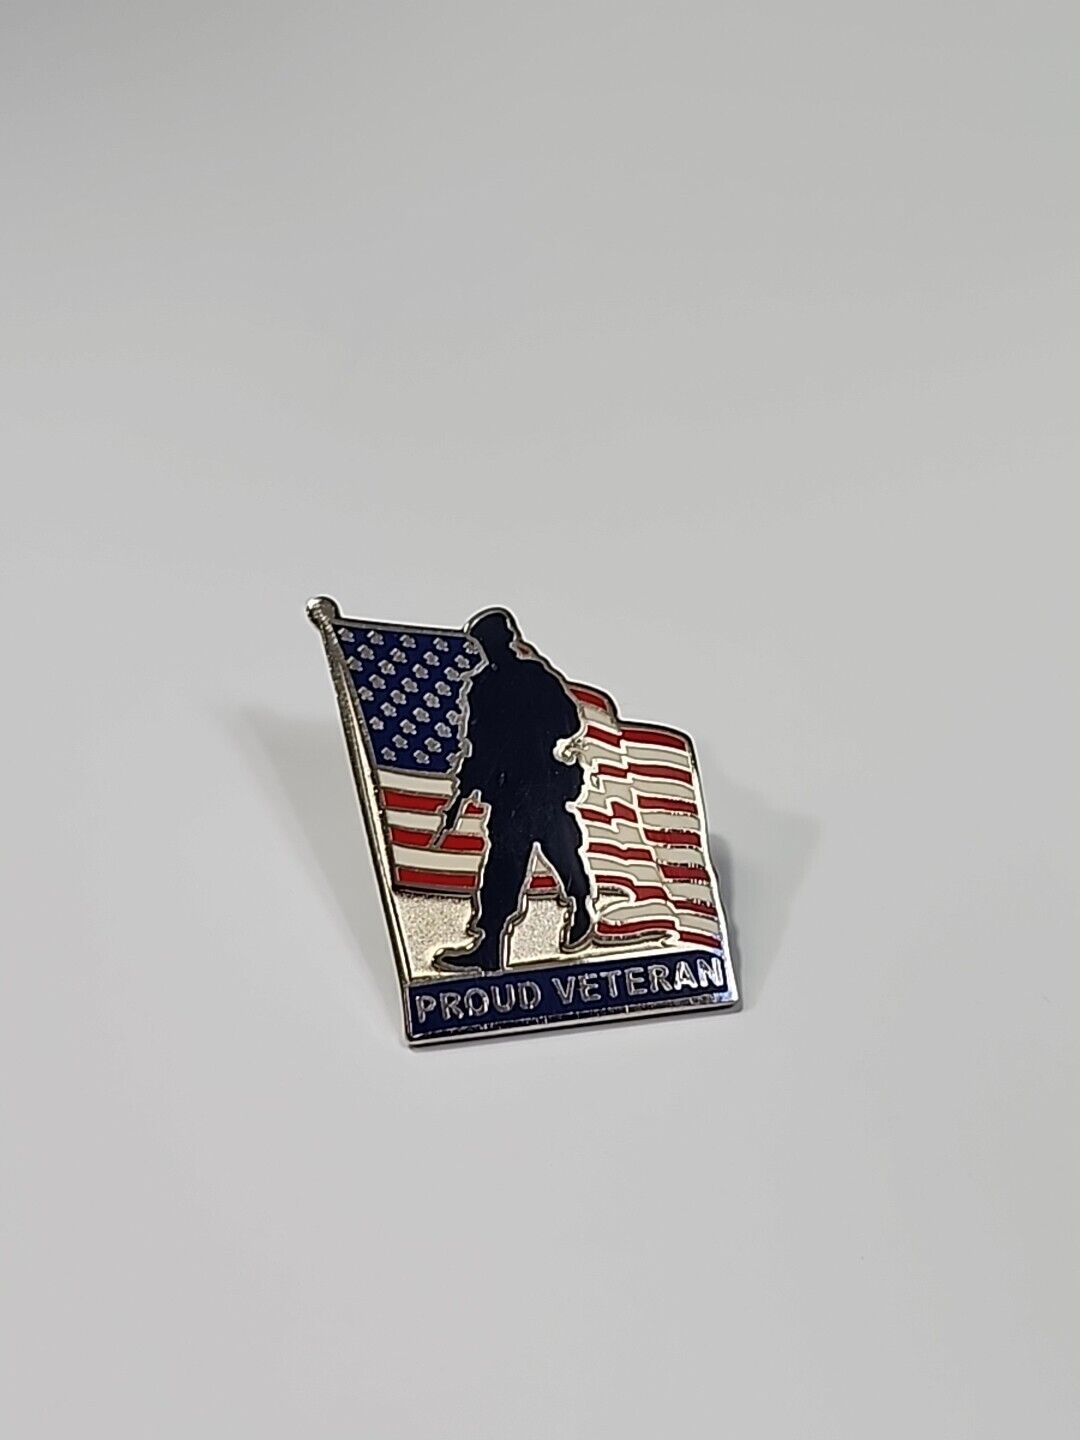 Proud Veteran Lapel Pin Soldier Silhouette USA American Flag Memorial Day